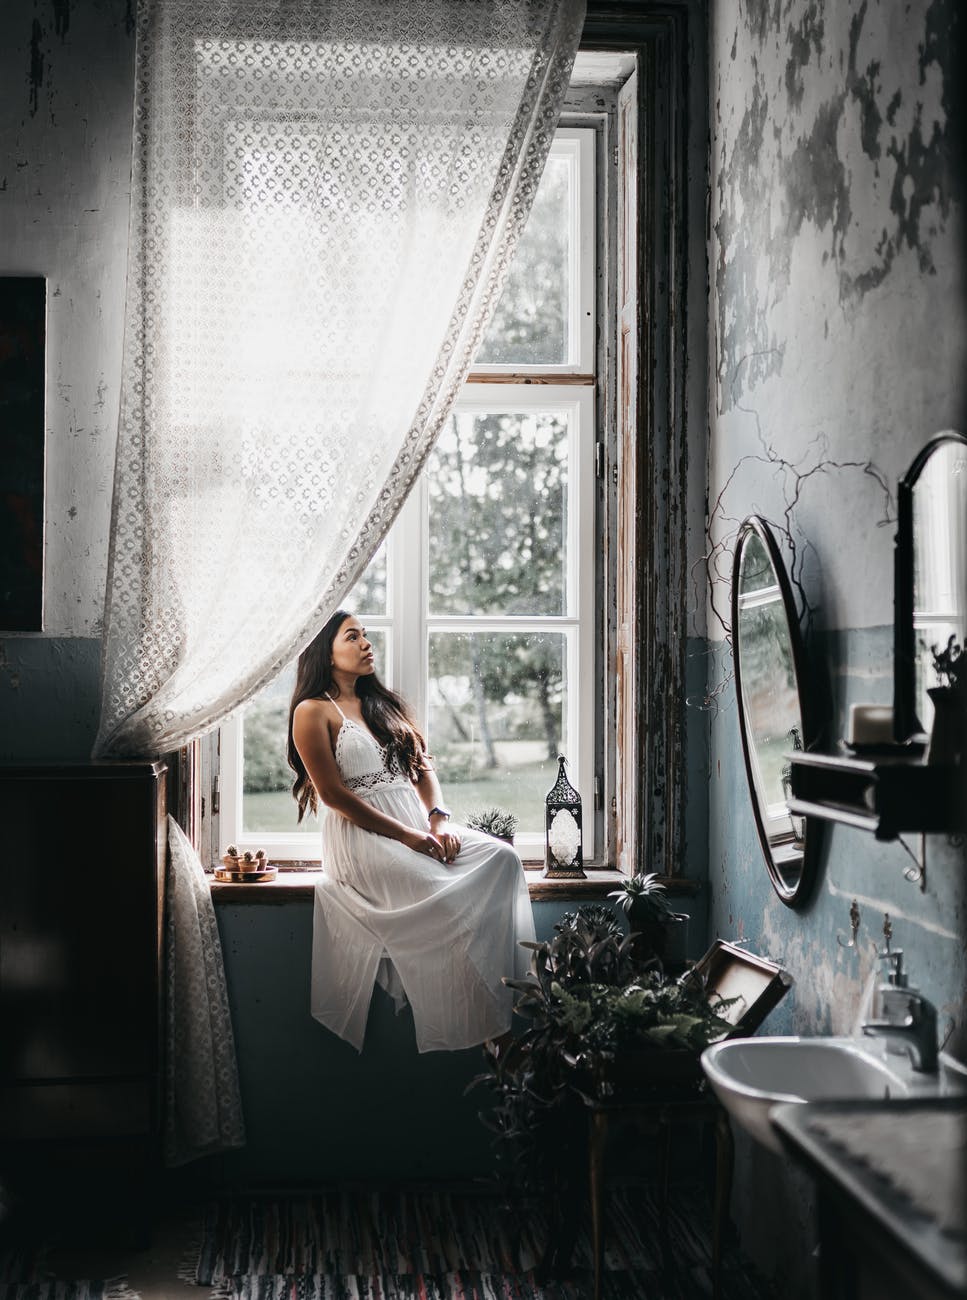 charming woman resting on windowsill in shabby bathroom